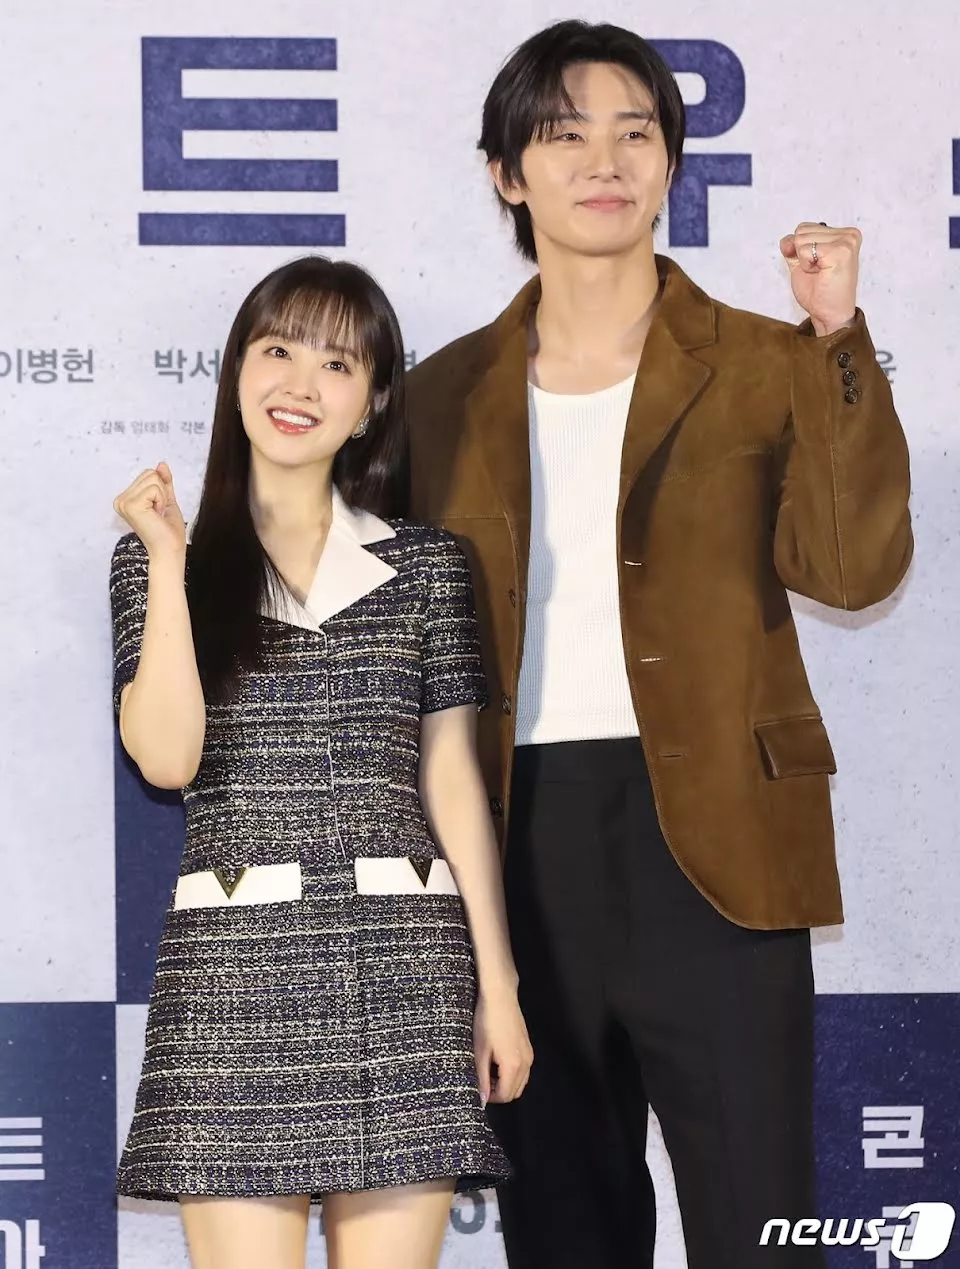 Актриса Пак Бо Ён призналась, что чувствовала себя "неловко" во время первой встречи с Пак Со Джуном по неожиданной причине